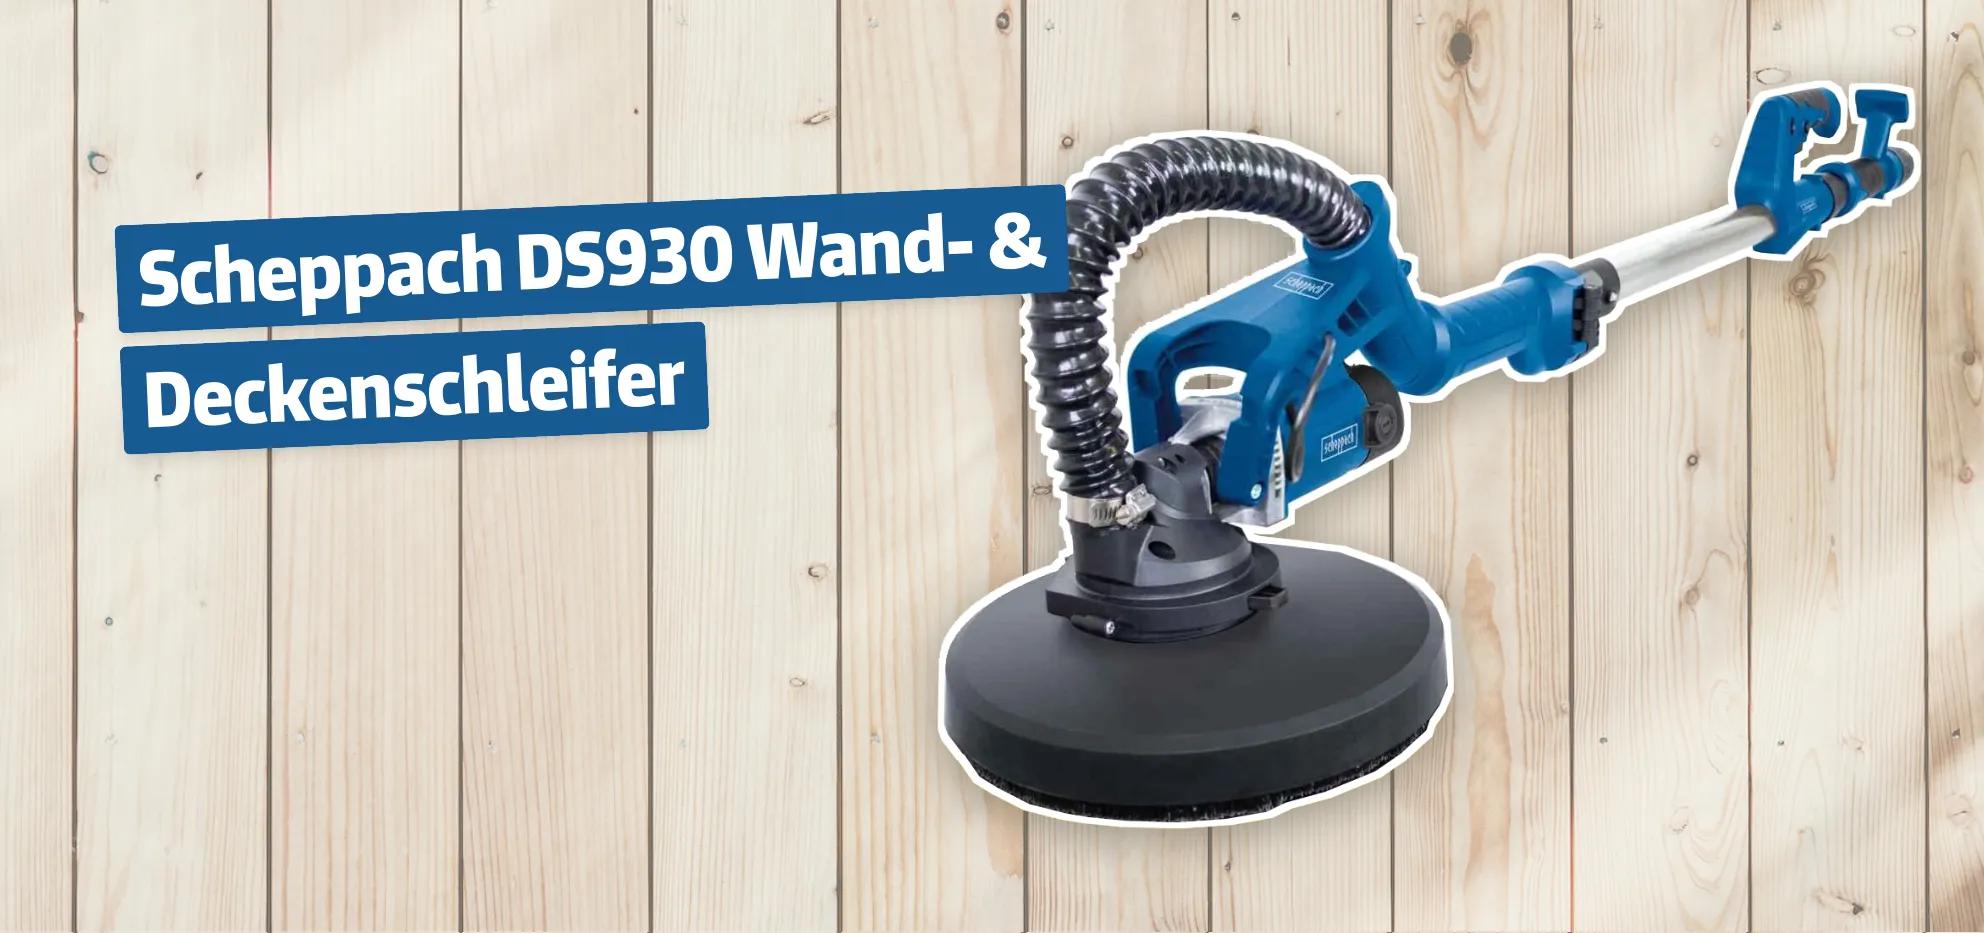 Scheppach DS930 Wand- & Deckenschleifer